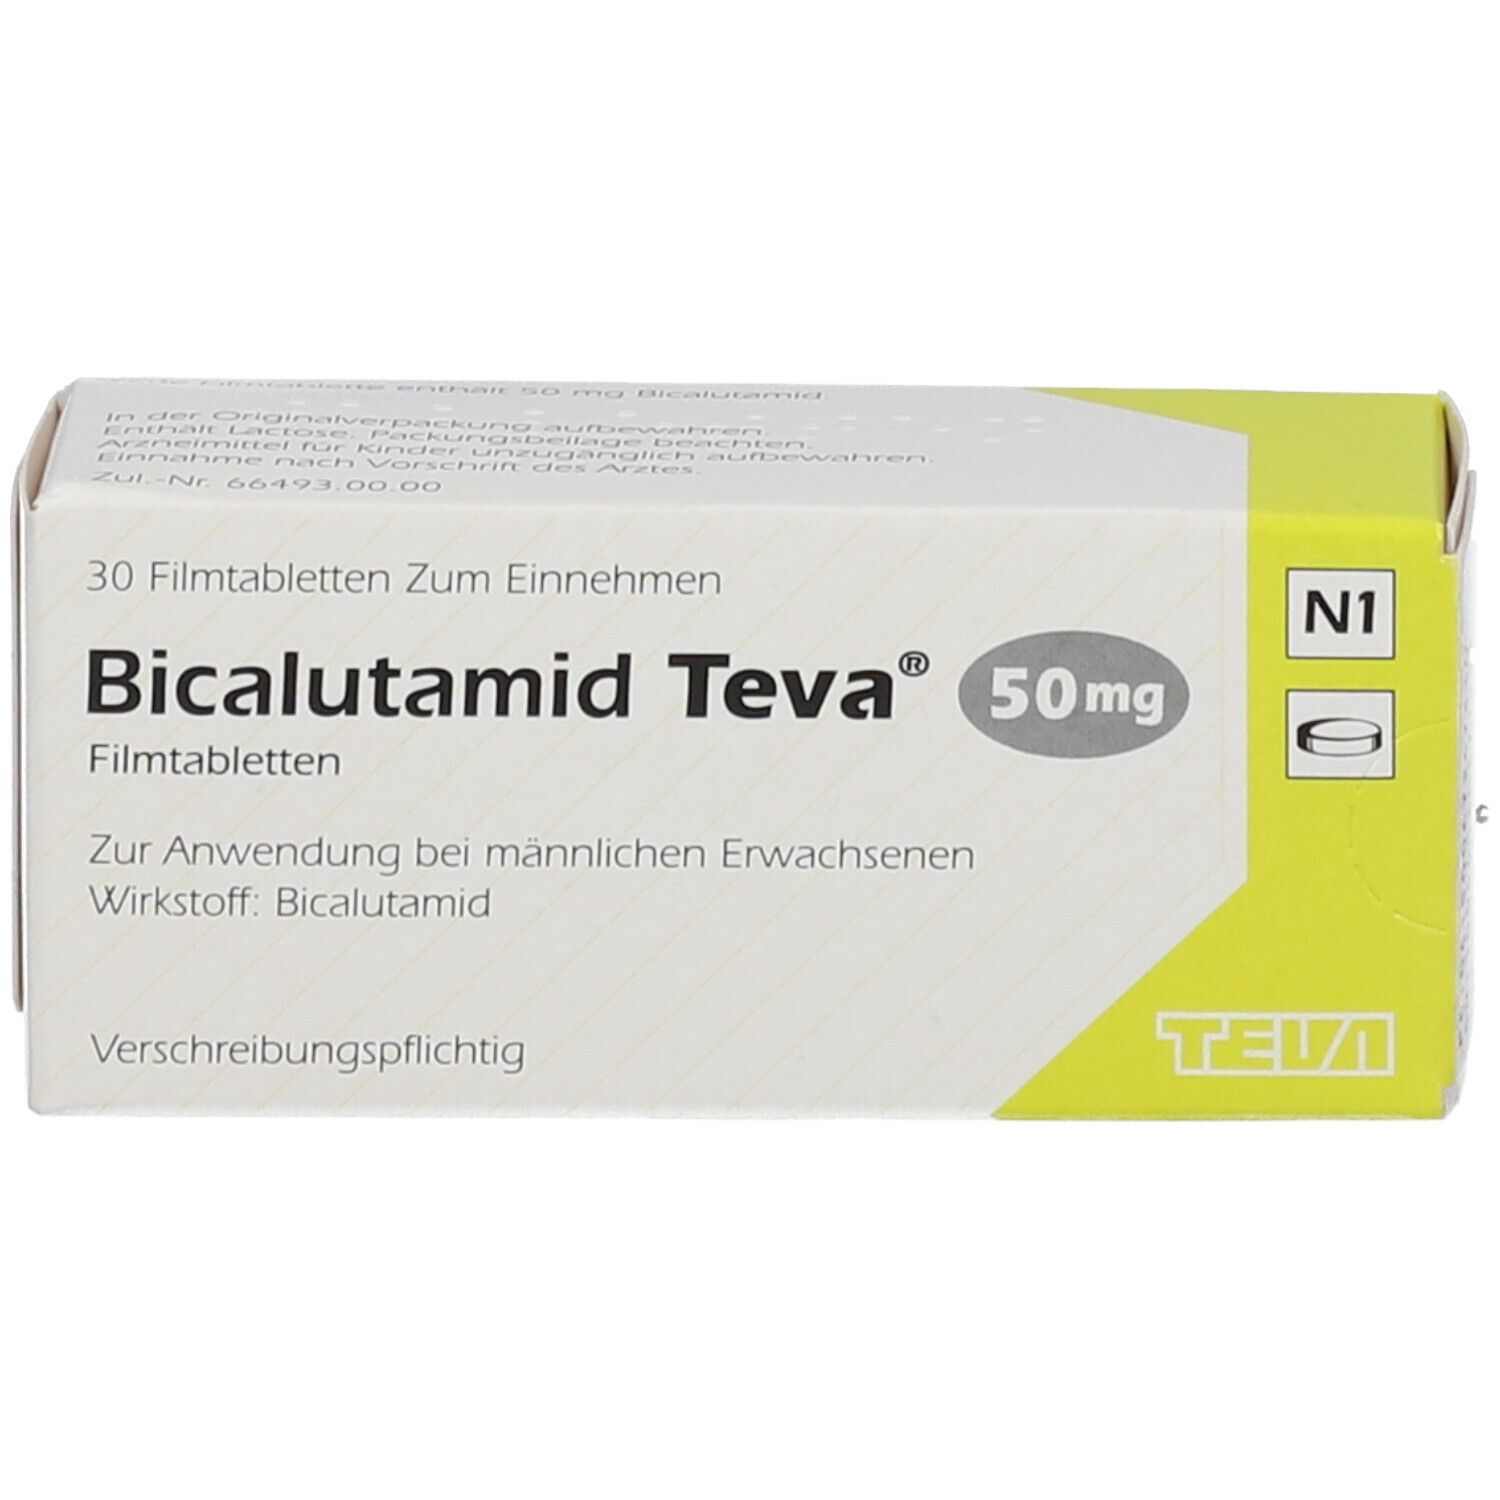 Bicalutamid Teva® 50 mg